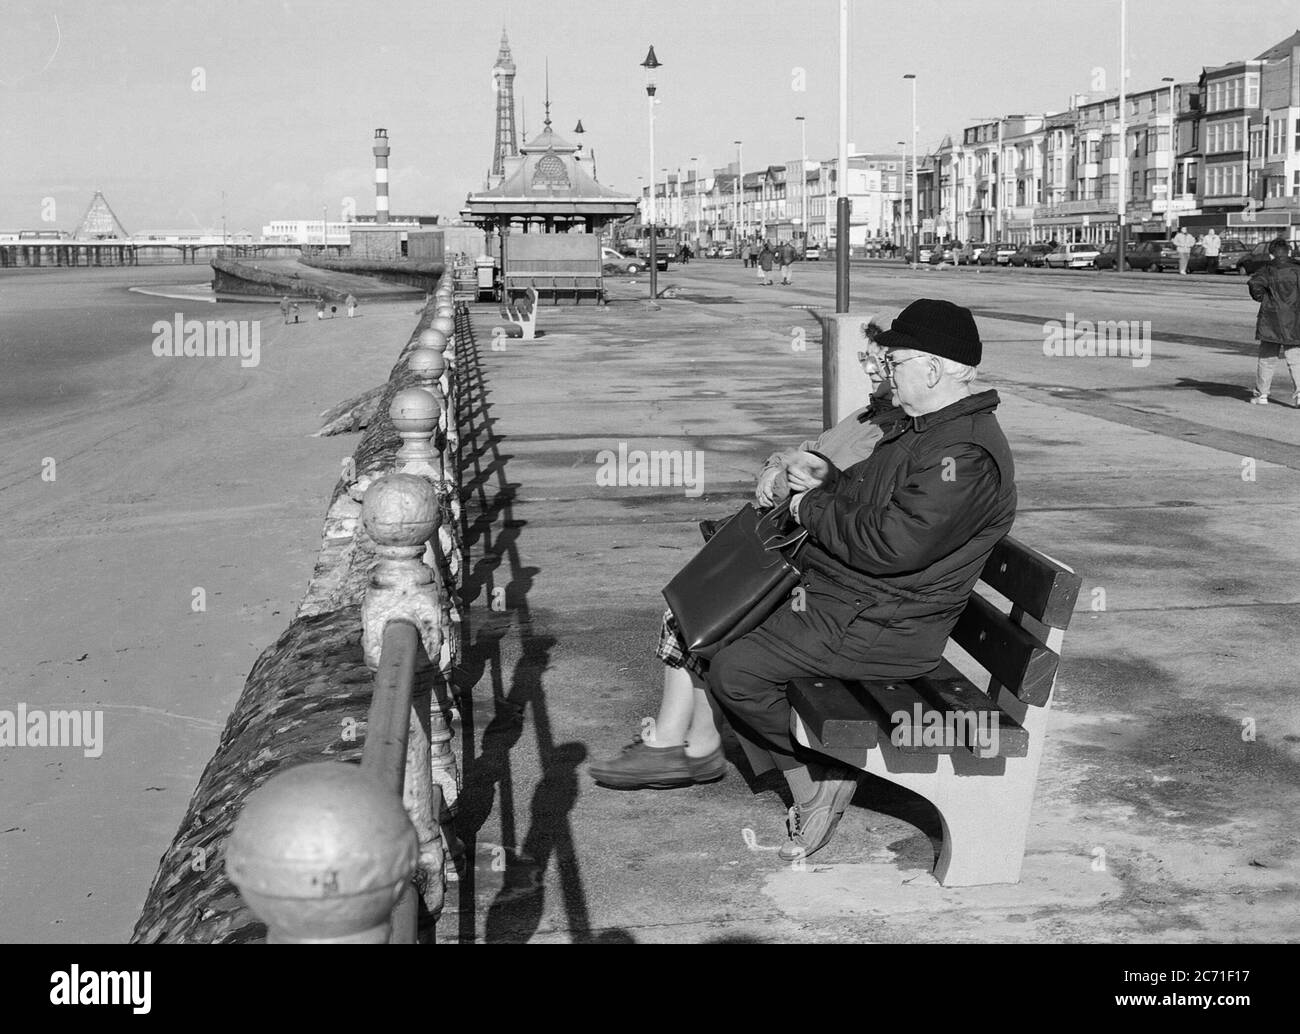 Les personnes âgées sont assises sur un banc sur le front de mer de Blackpool, au nord-ouest de l'Angleterre, au Royaume-Uni Banque D'Images